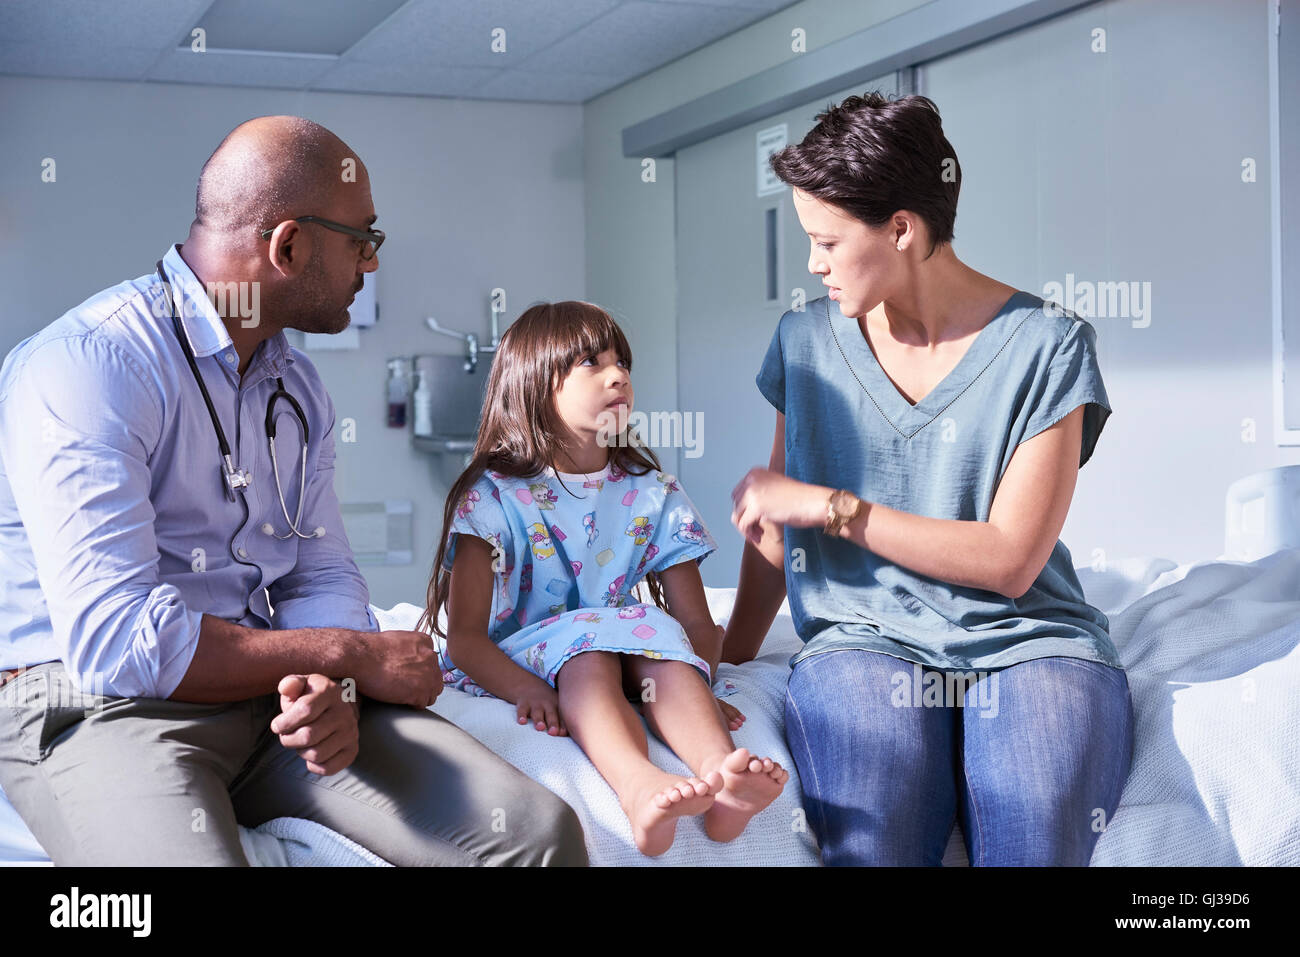 Médico varón explicando a la niña y a su madre del paciente en el hospital Children's ward Foto de stock